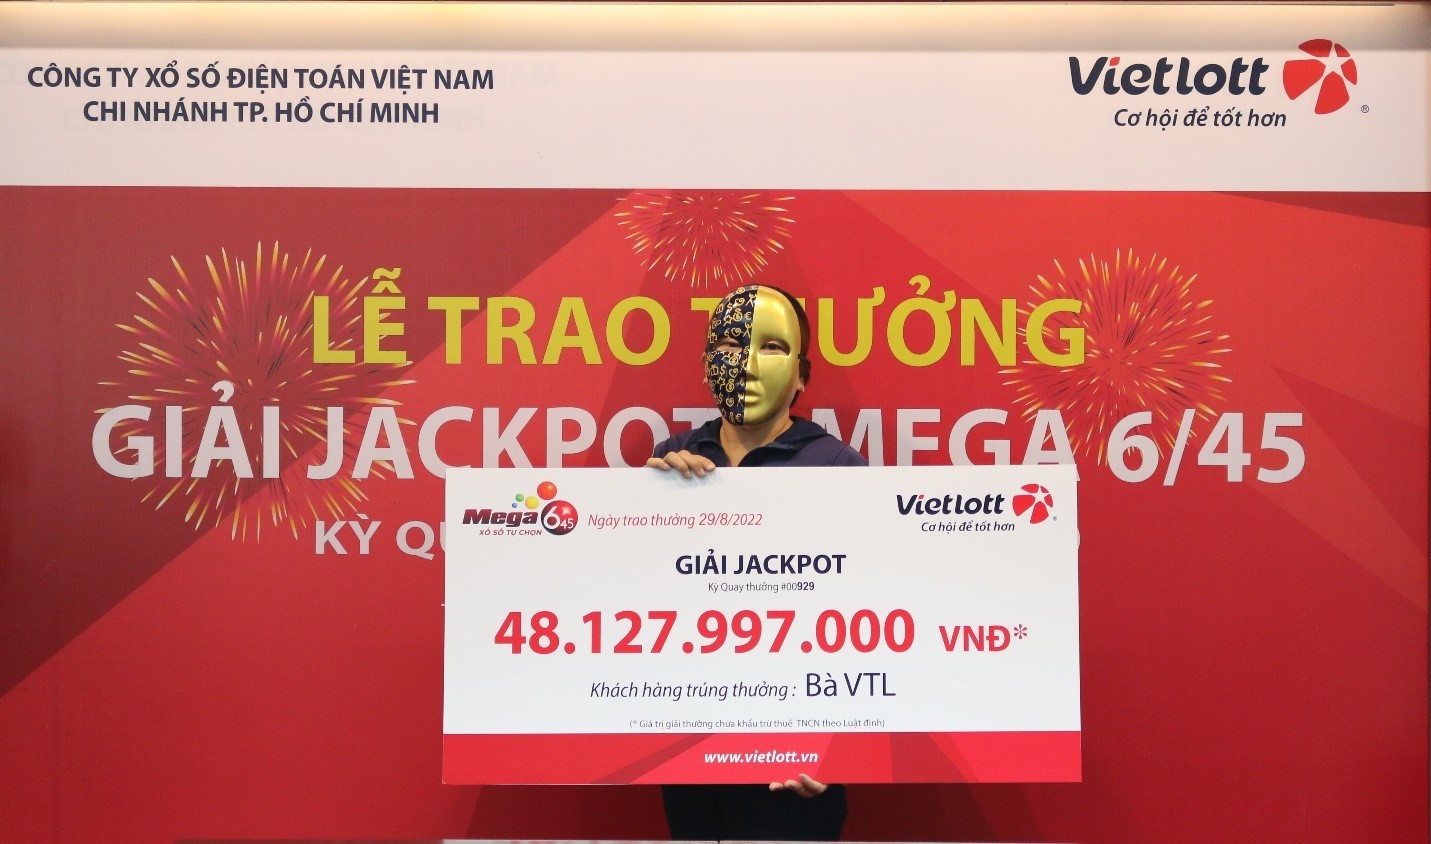 Trao thưởng Jackpot Mega 6/45 trị giá 48 tỷ đồng cho người chơi tại TP.Hồ Chí Minh